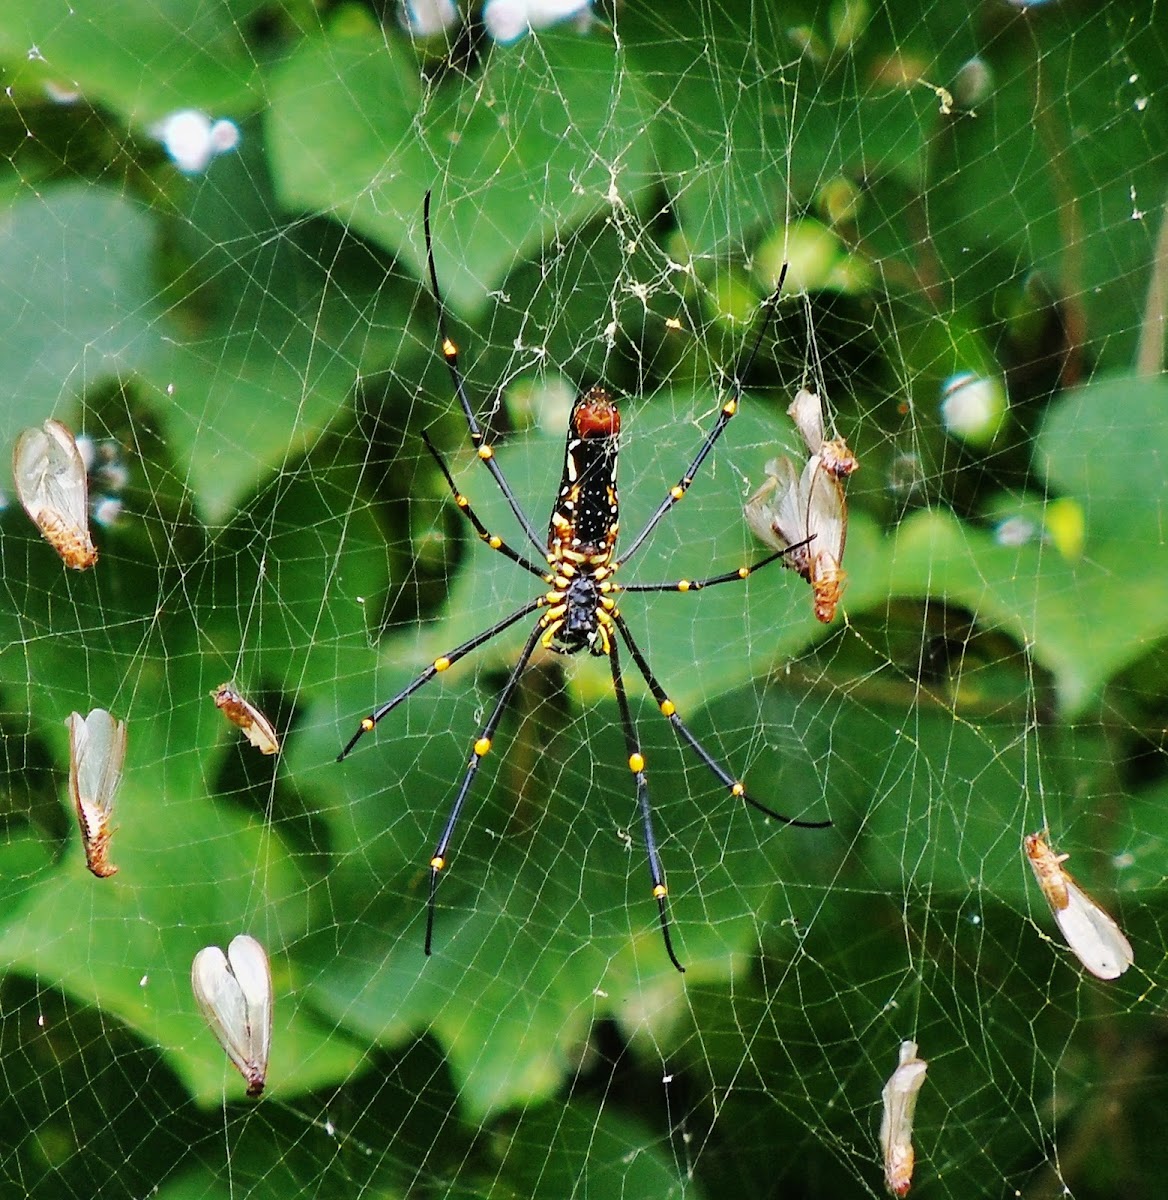 Indian golden orb-web spider